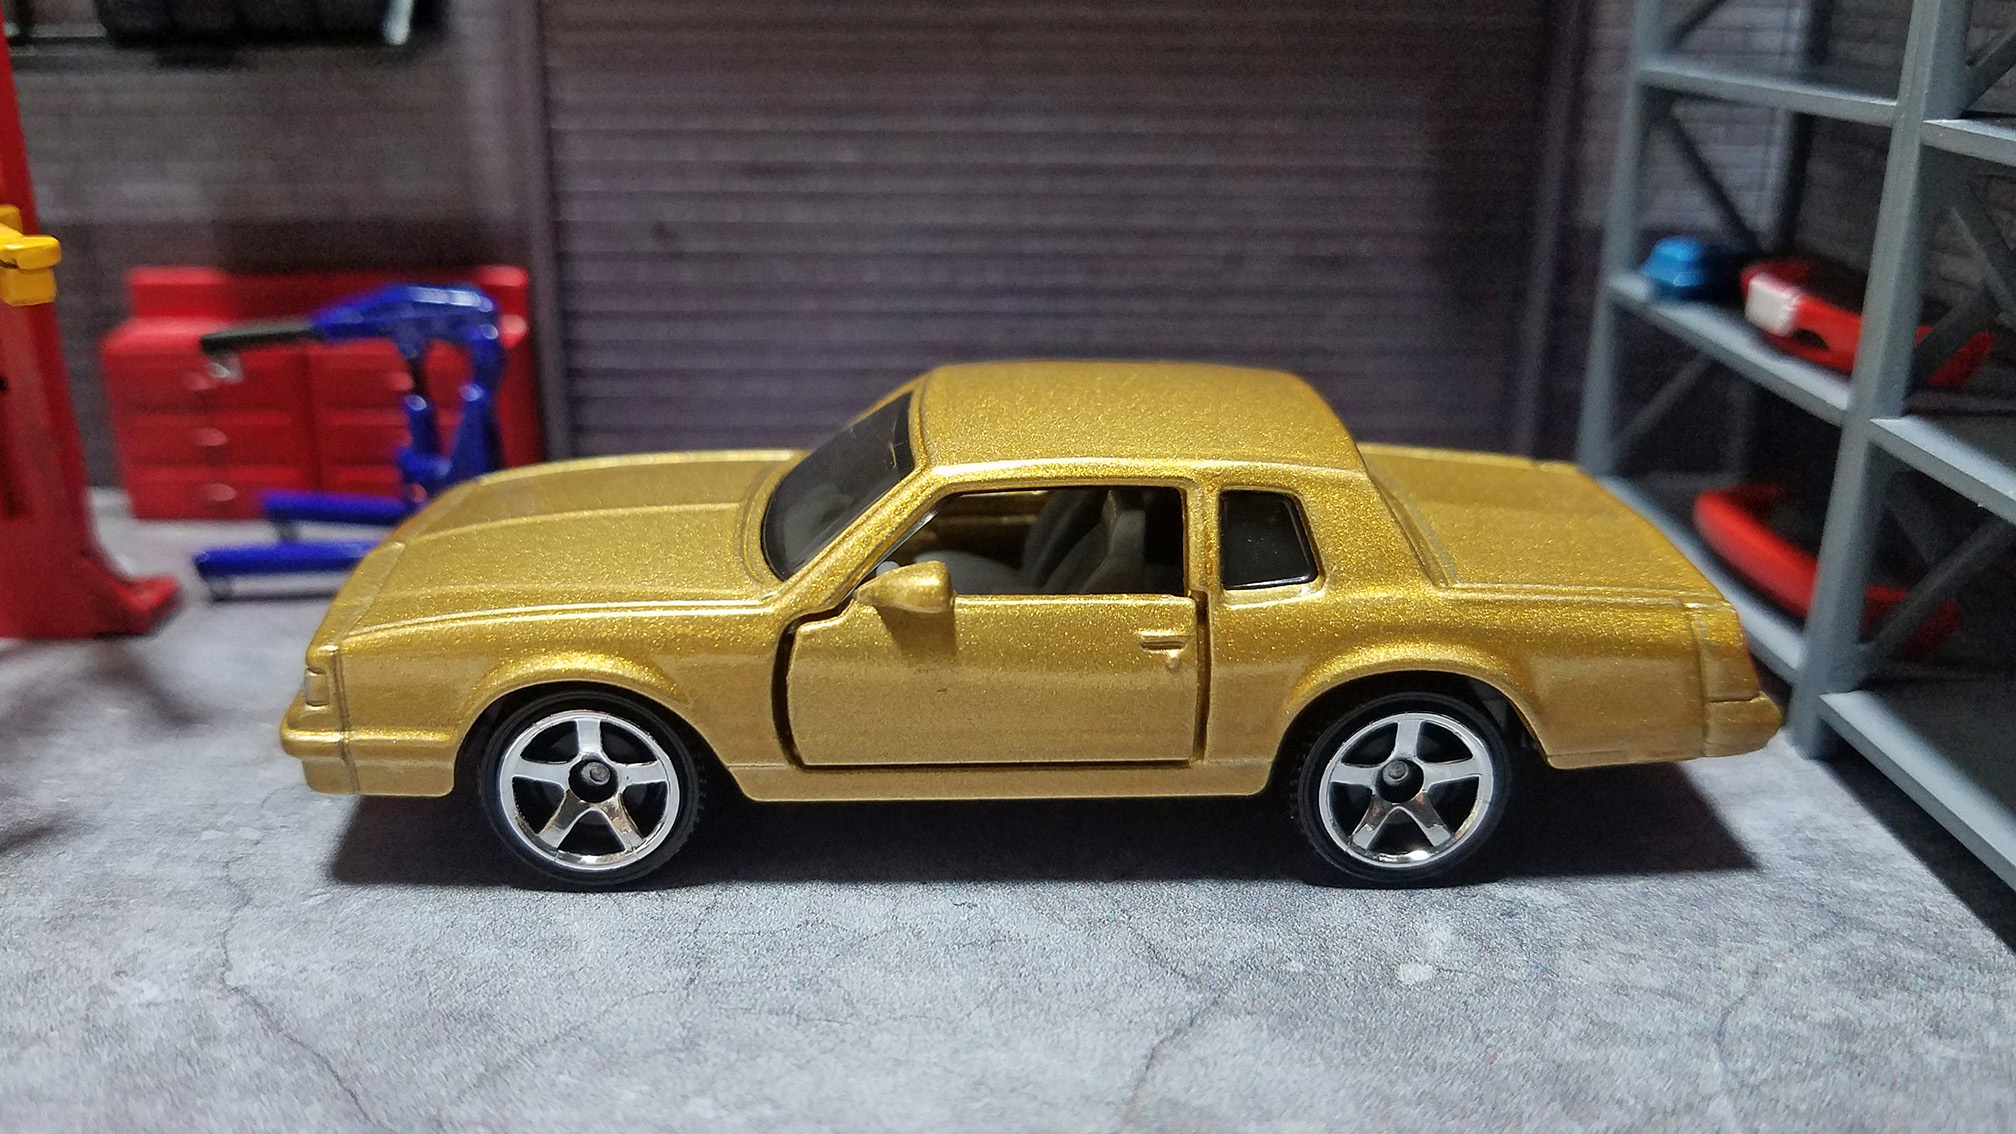 [Matchbox] '88 Chevy Monte Carlo LS - ken motors ver.2